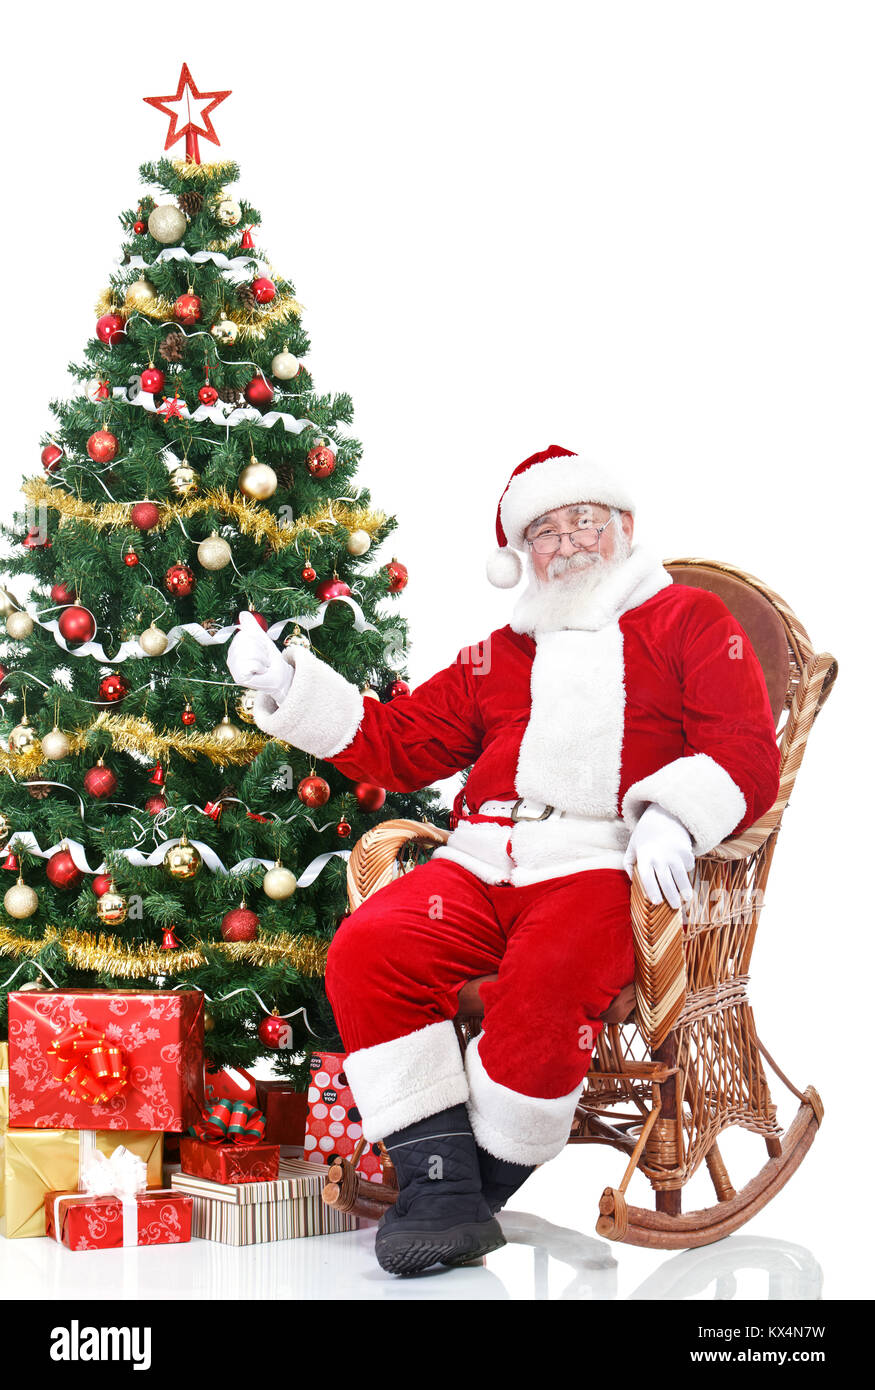 Babbo Natale seduto accanto ad albero di Natale che mostra il pollice fino a firmare, isolati su sfondo bianco Foto Stock